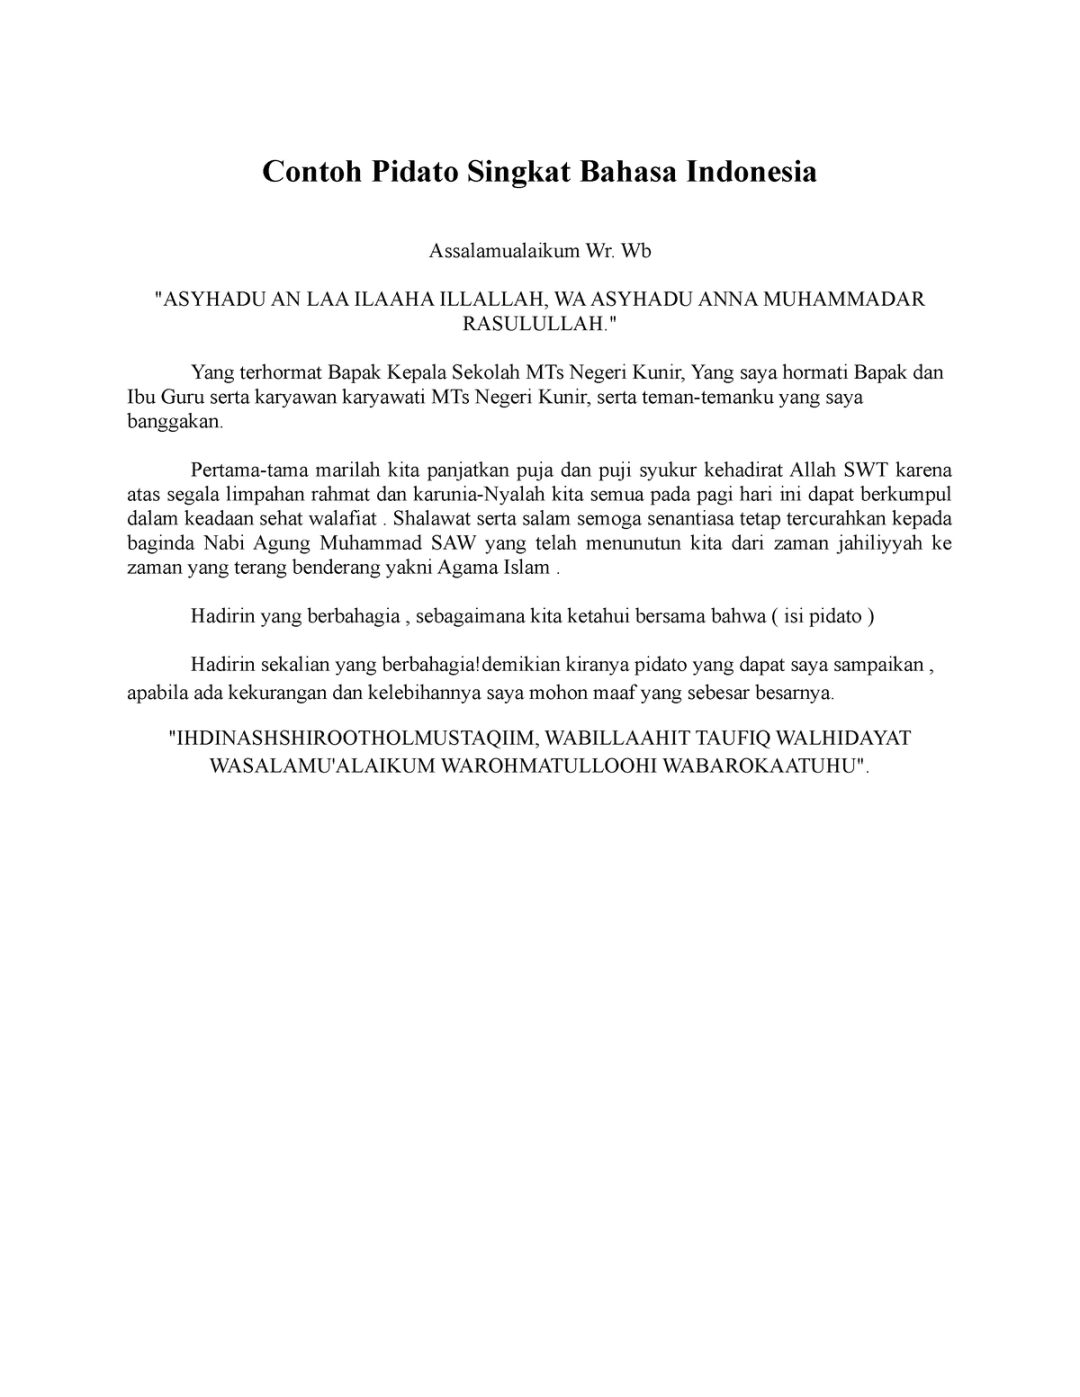 Contoh Pidato Singkat Bahasa Indonesia - Contoh Pidato Singkat